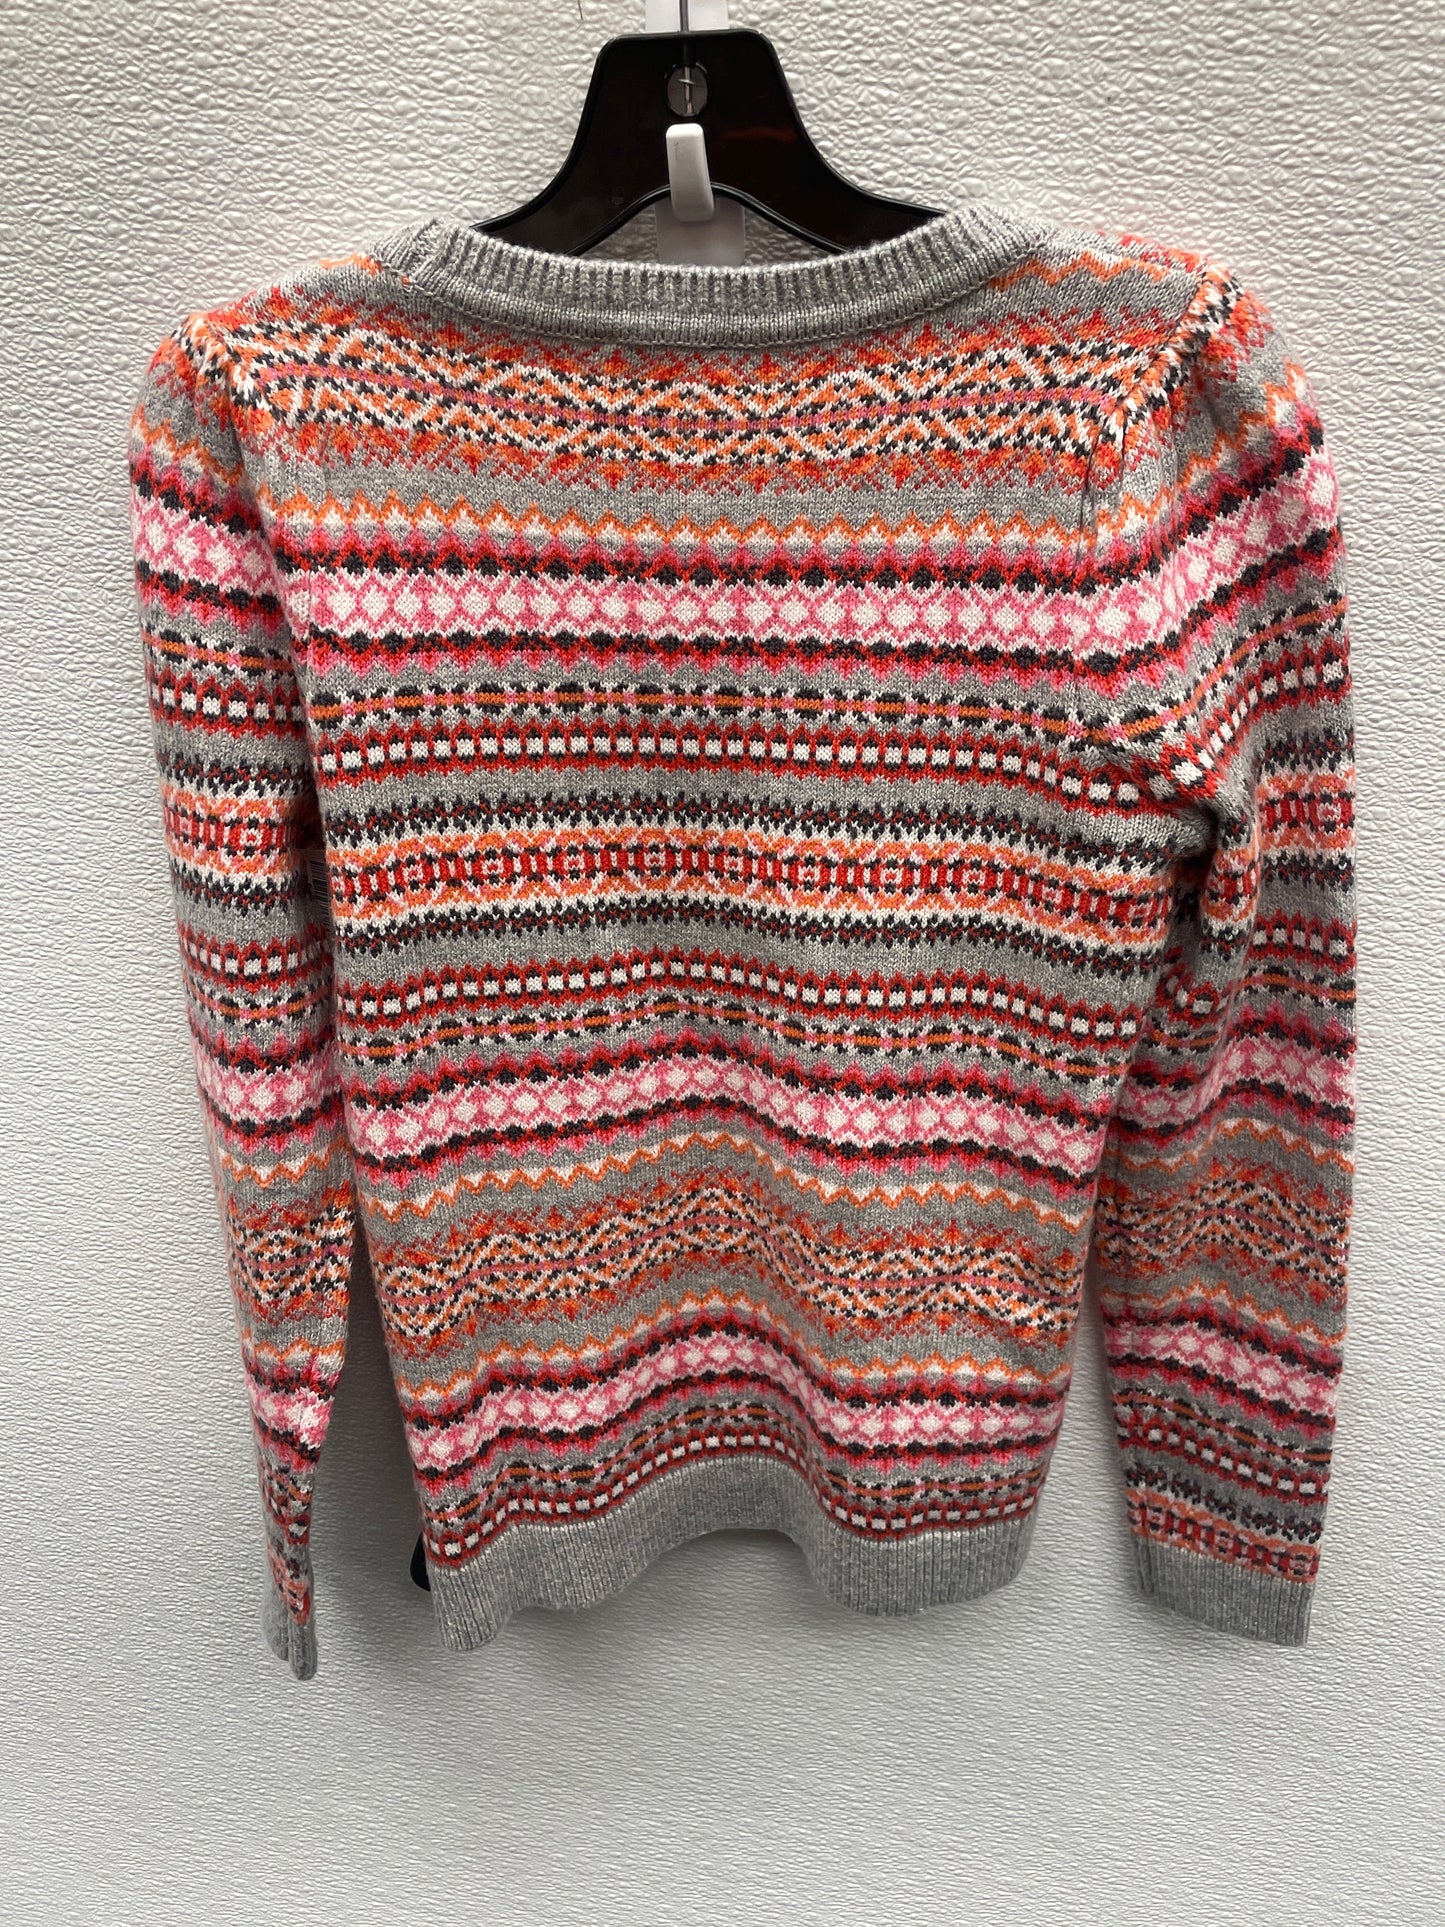 Sweater By Talbots  Size: Petite   Xs